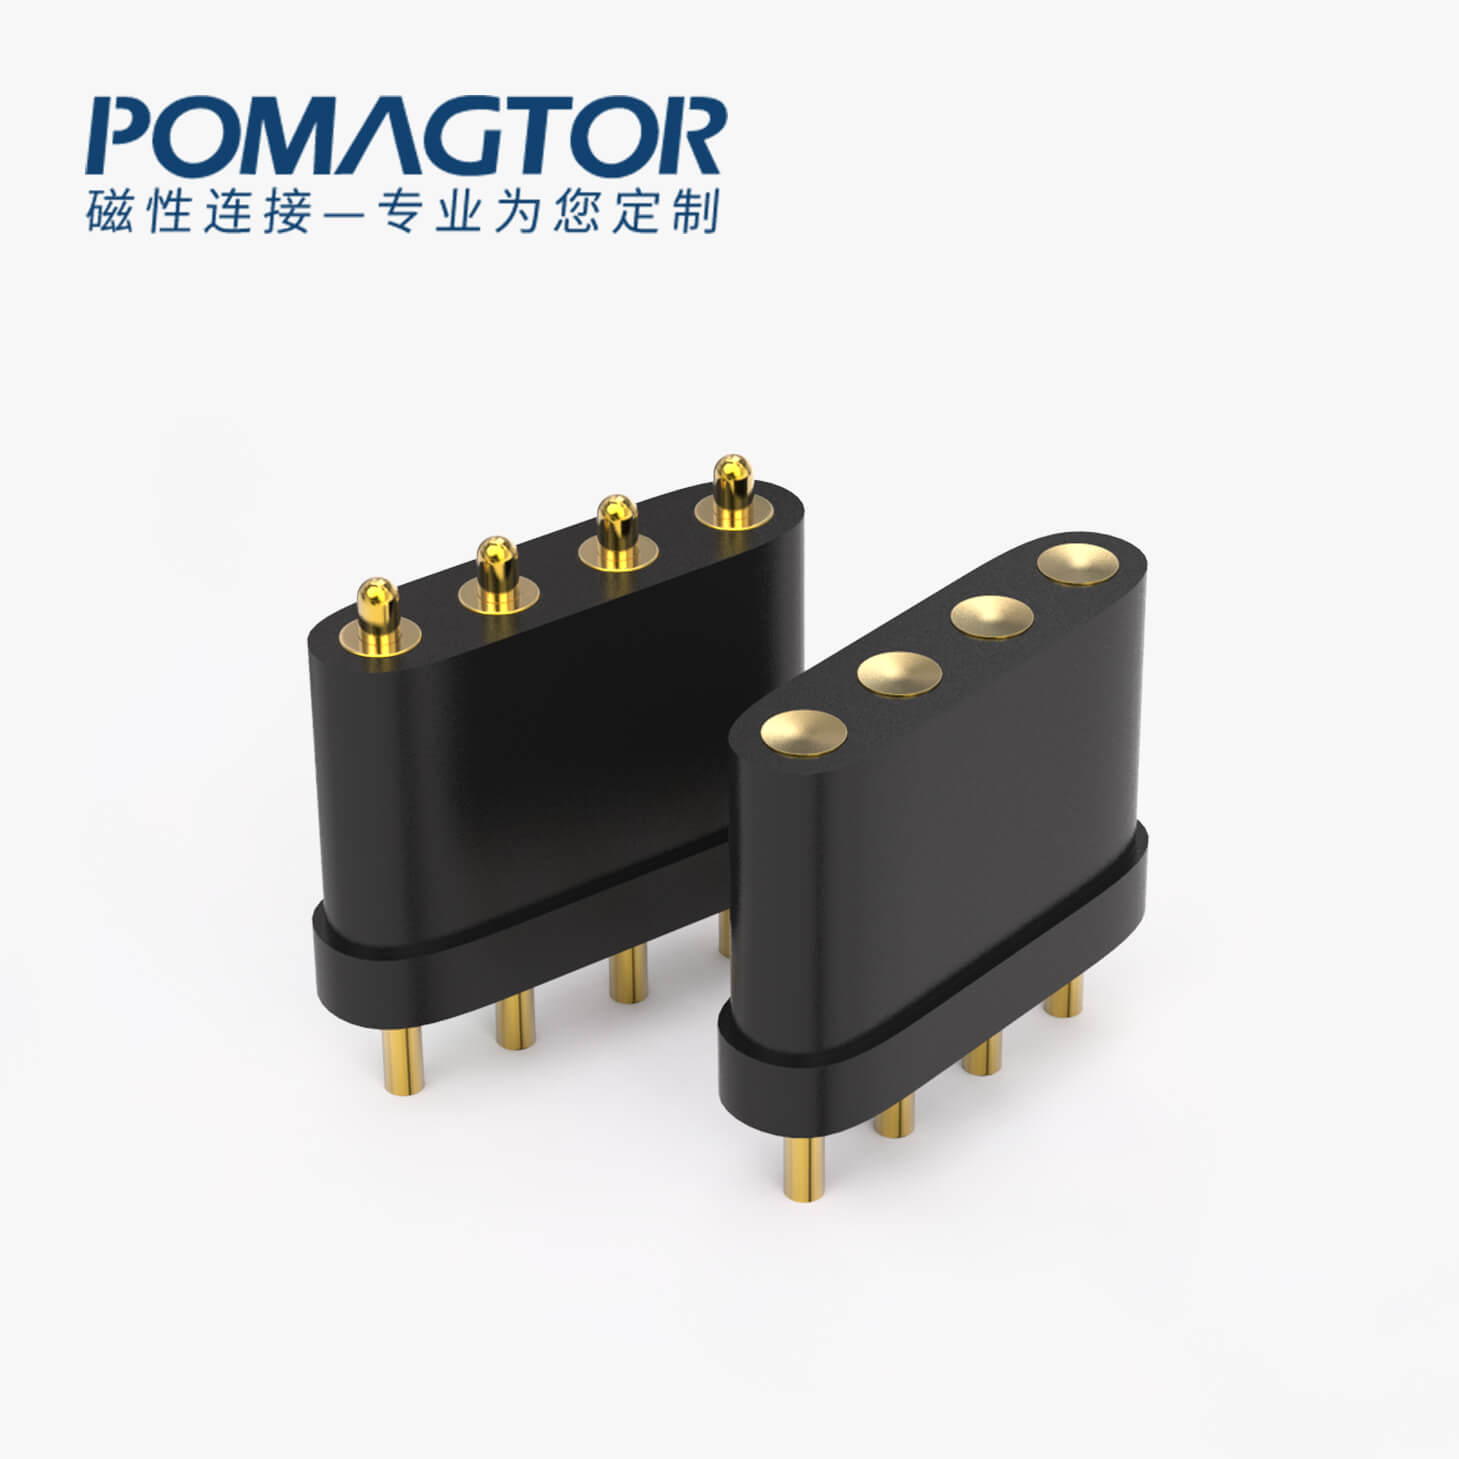 POGO PIN连接器 DIP式：4PIN，电镀黄铜Au3u，电压12V，电流1A，工作温度-30°~85°